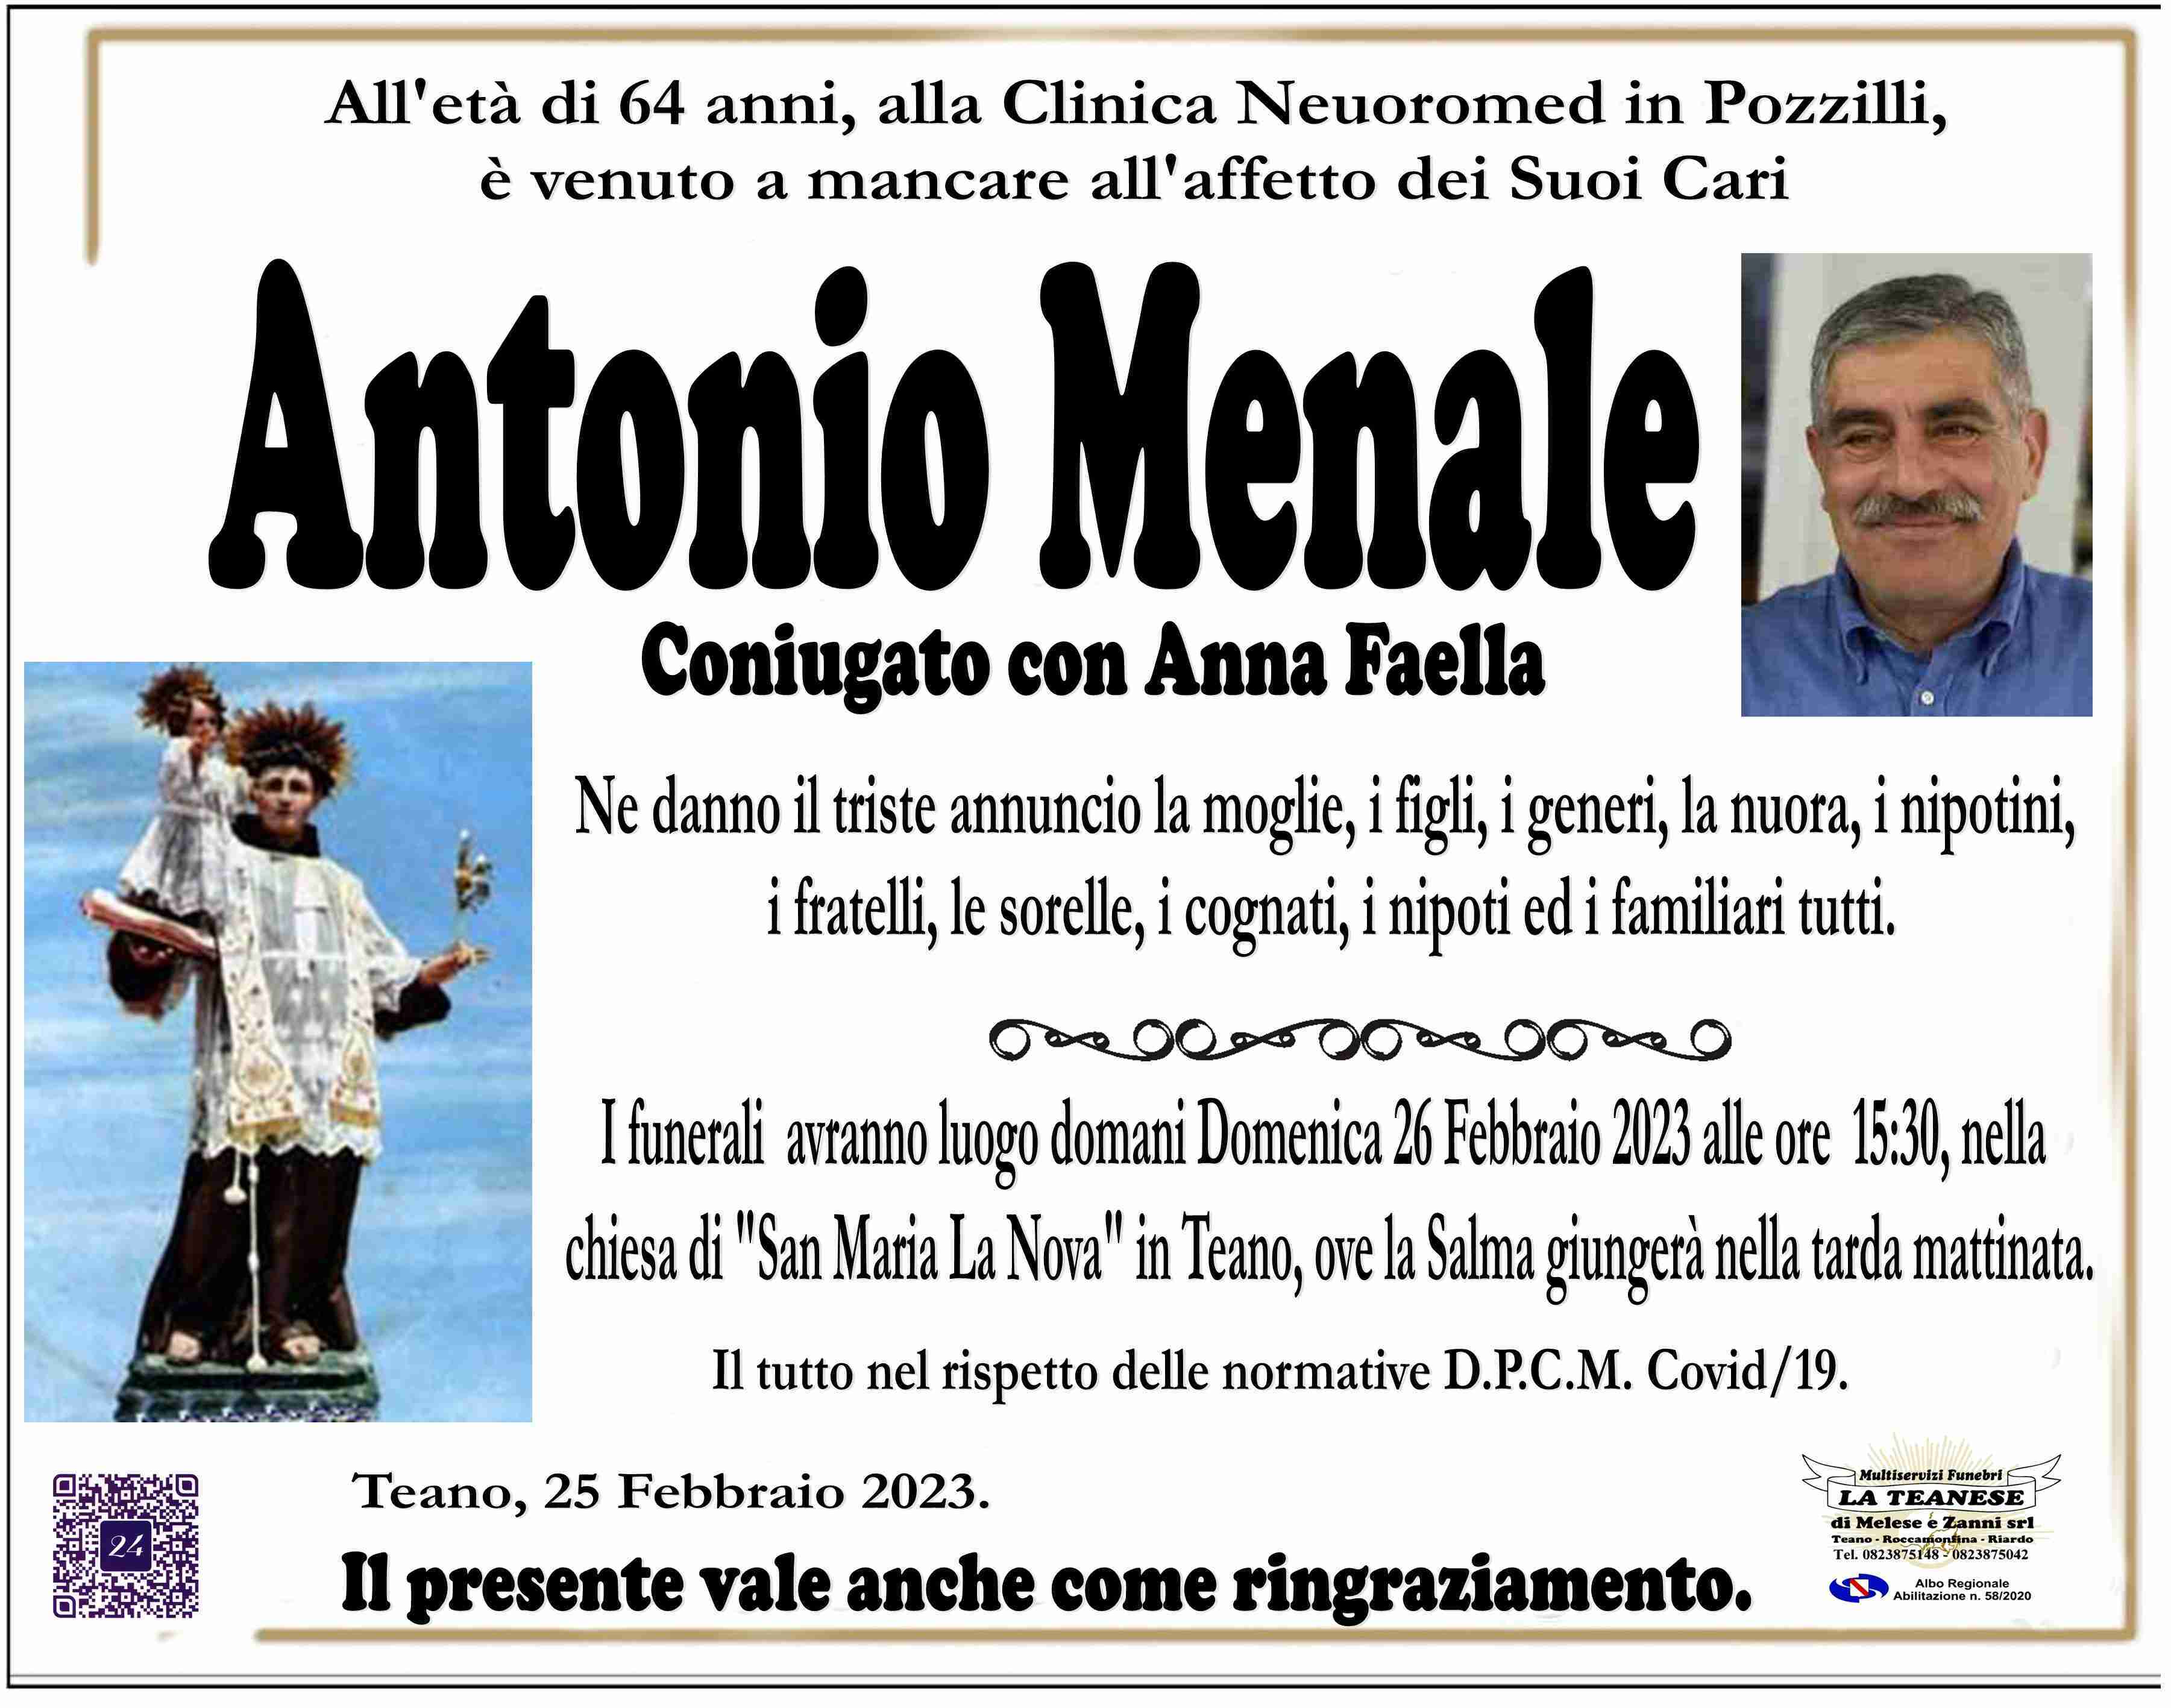 Antonio Menale